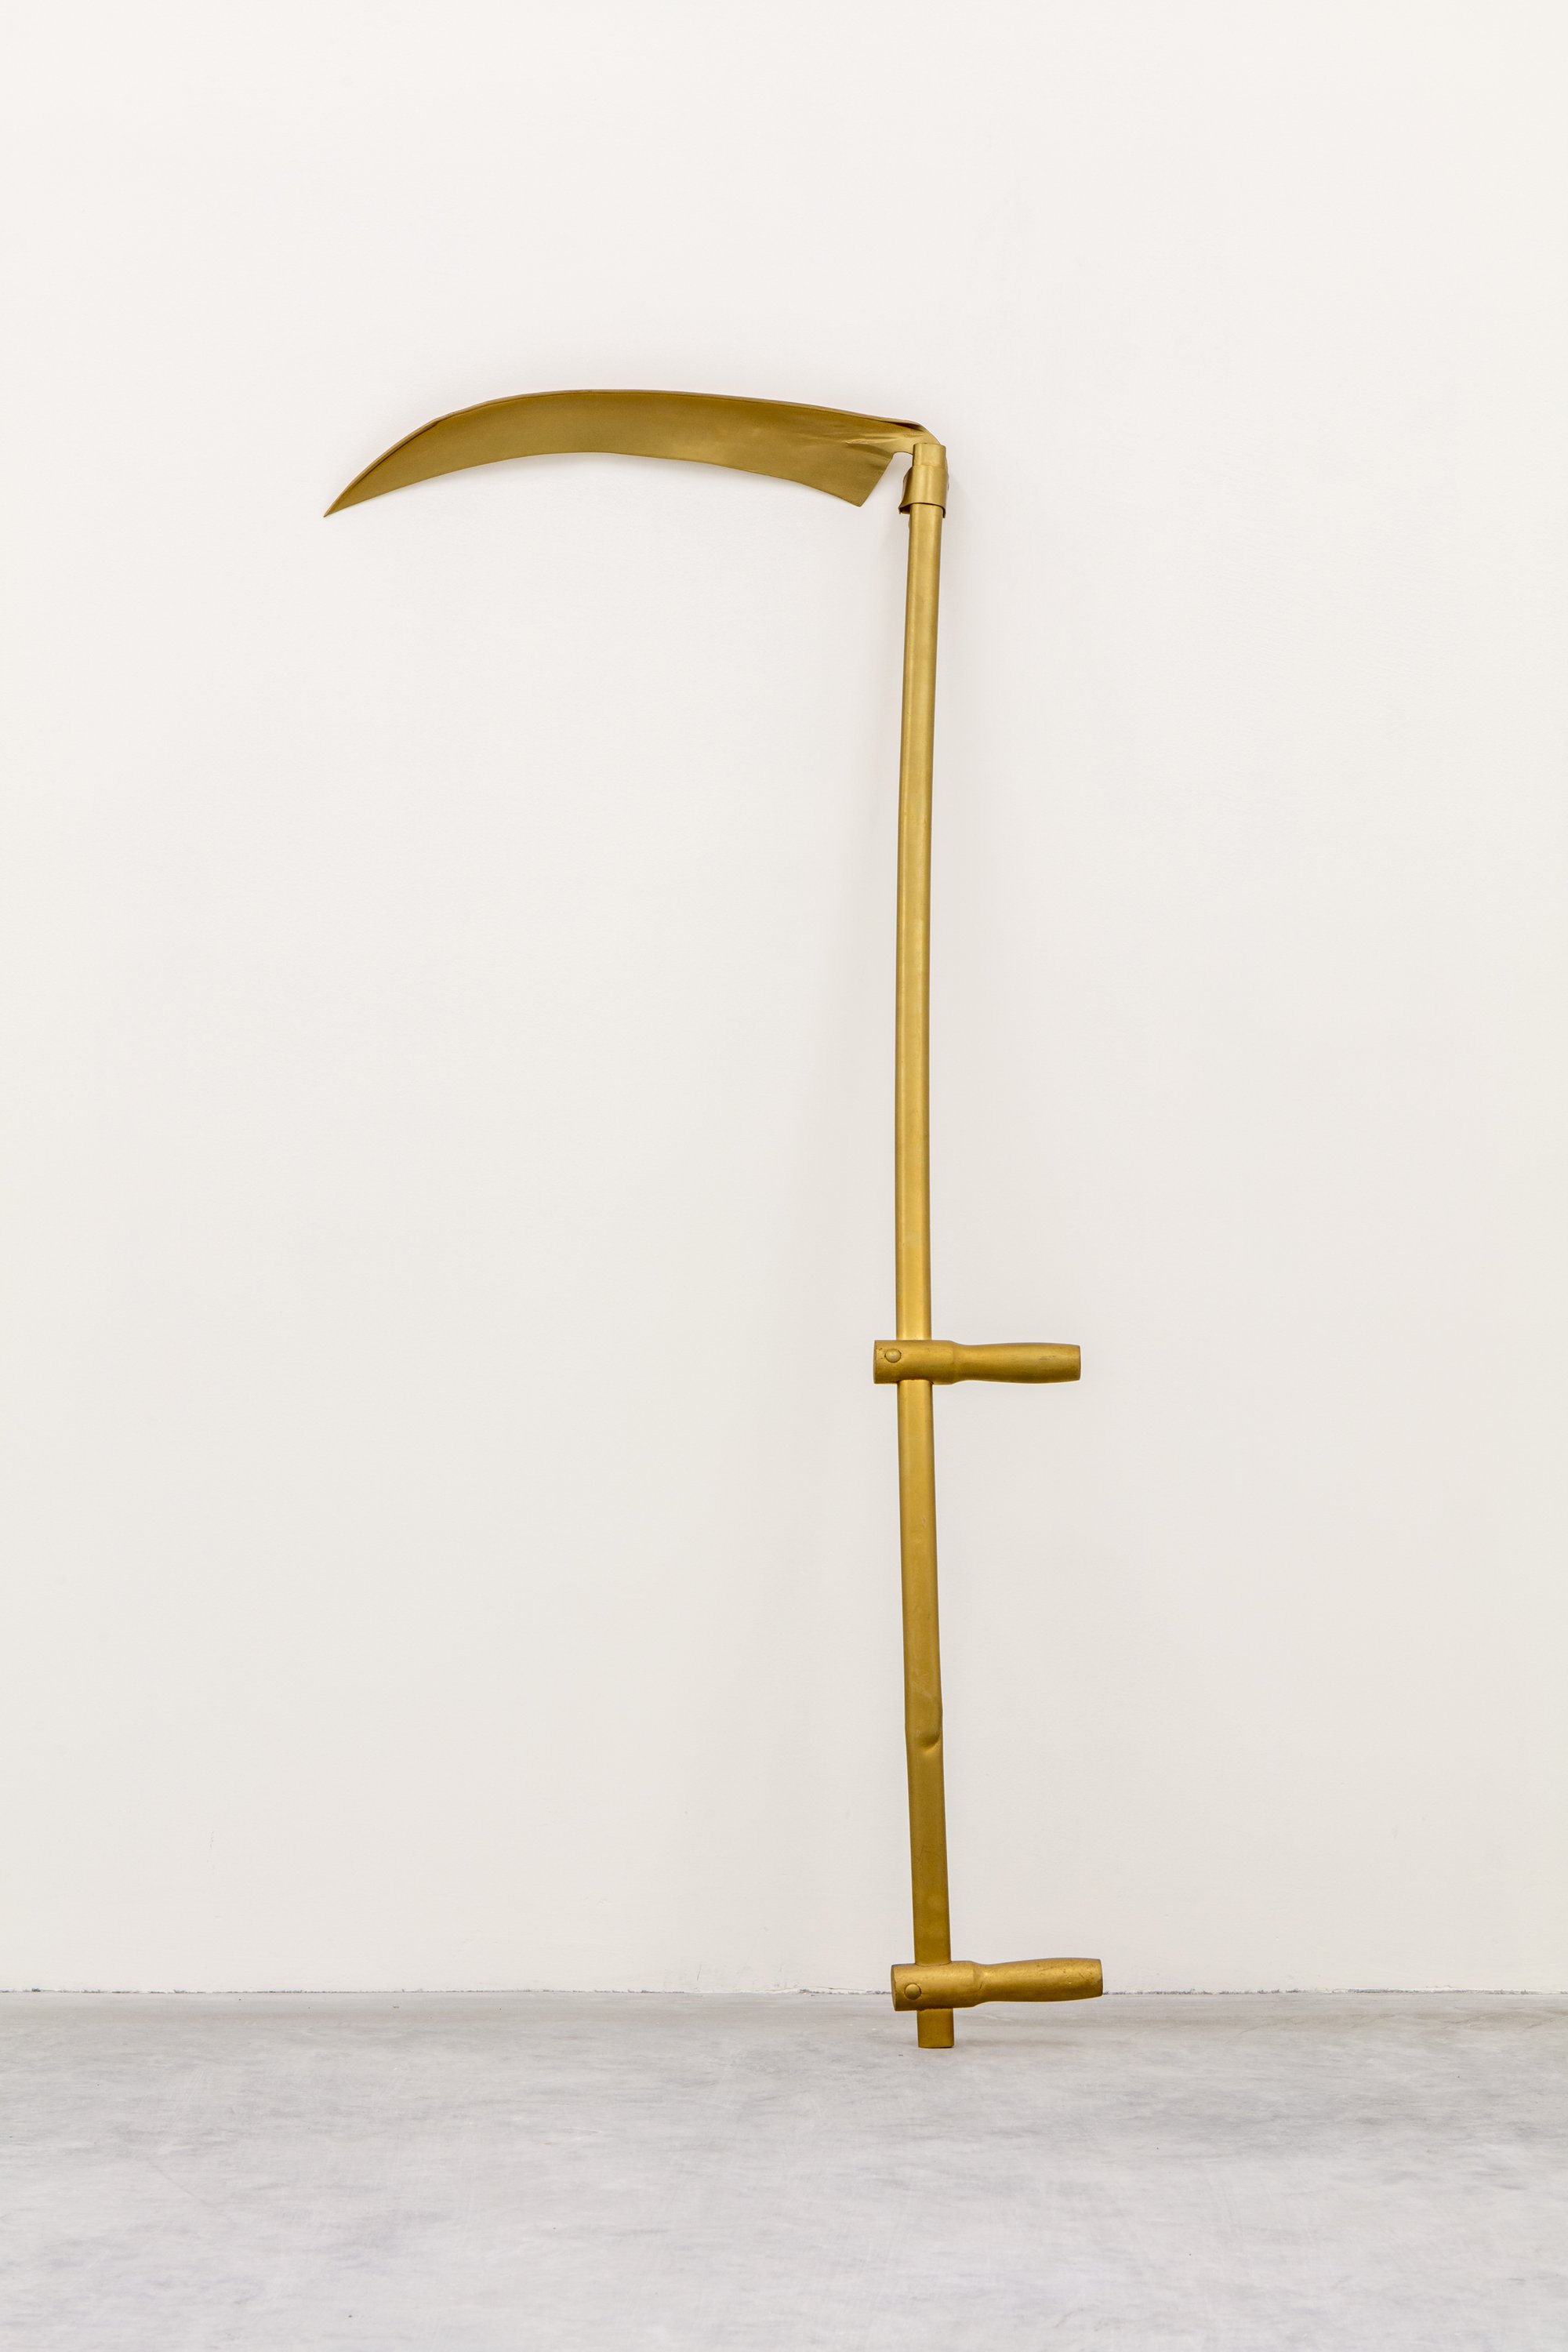 Liliana Moro, La rivoluzione non è più solo necessaria ma indispensabile, metal sickle gold-plated with spray paint, 150 x 60 cm, 2011